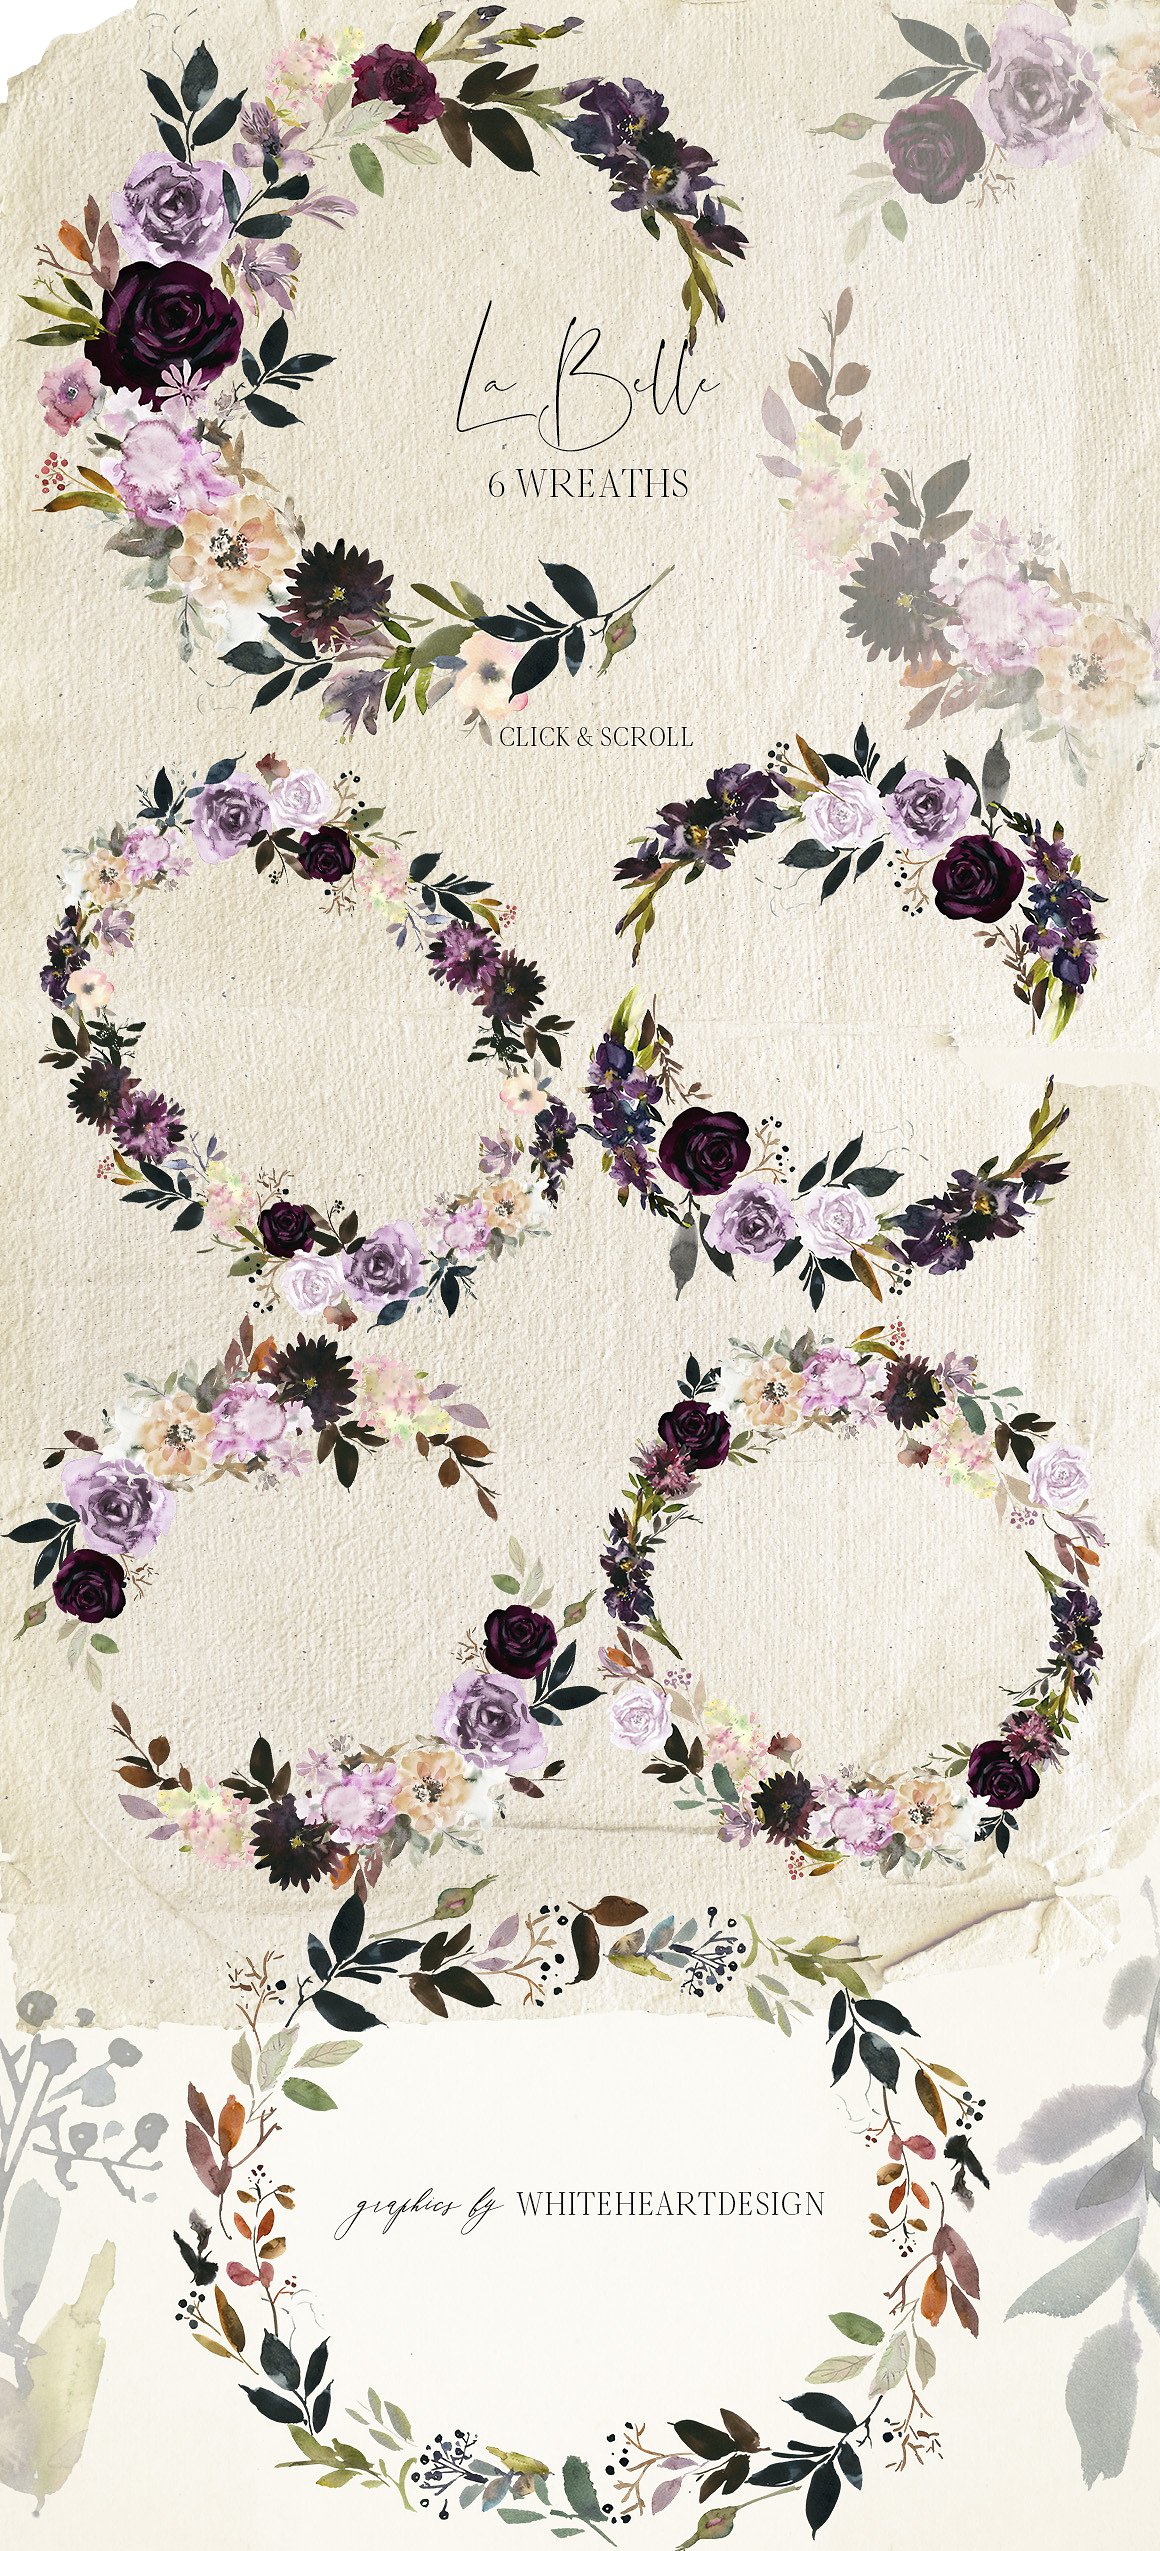 魅力水彩花卉剪贴画 La Belle Watercolor Floral Clipart插图(4)